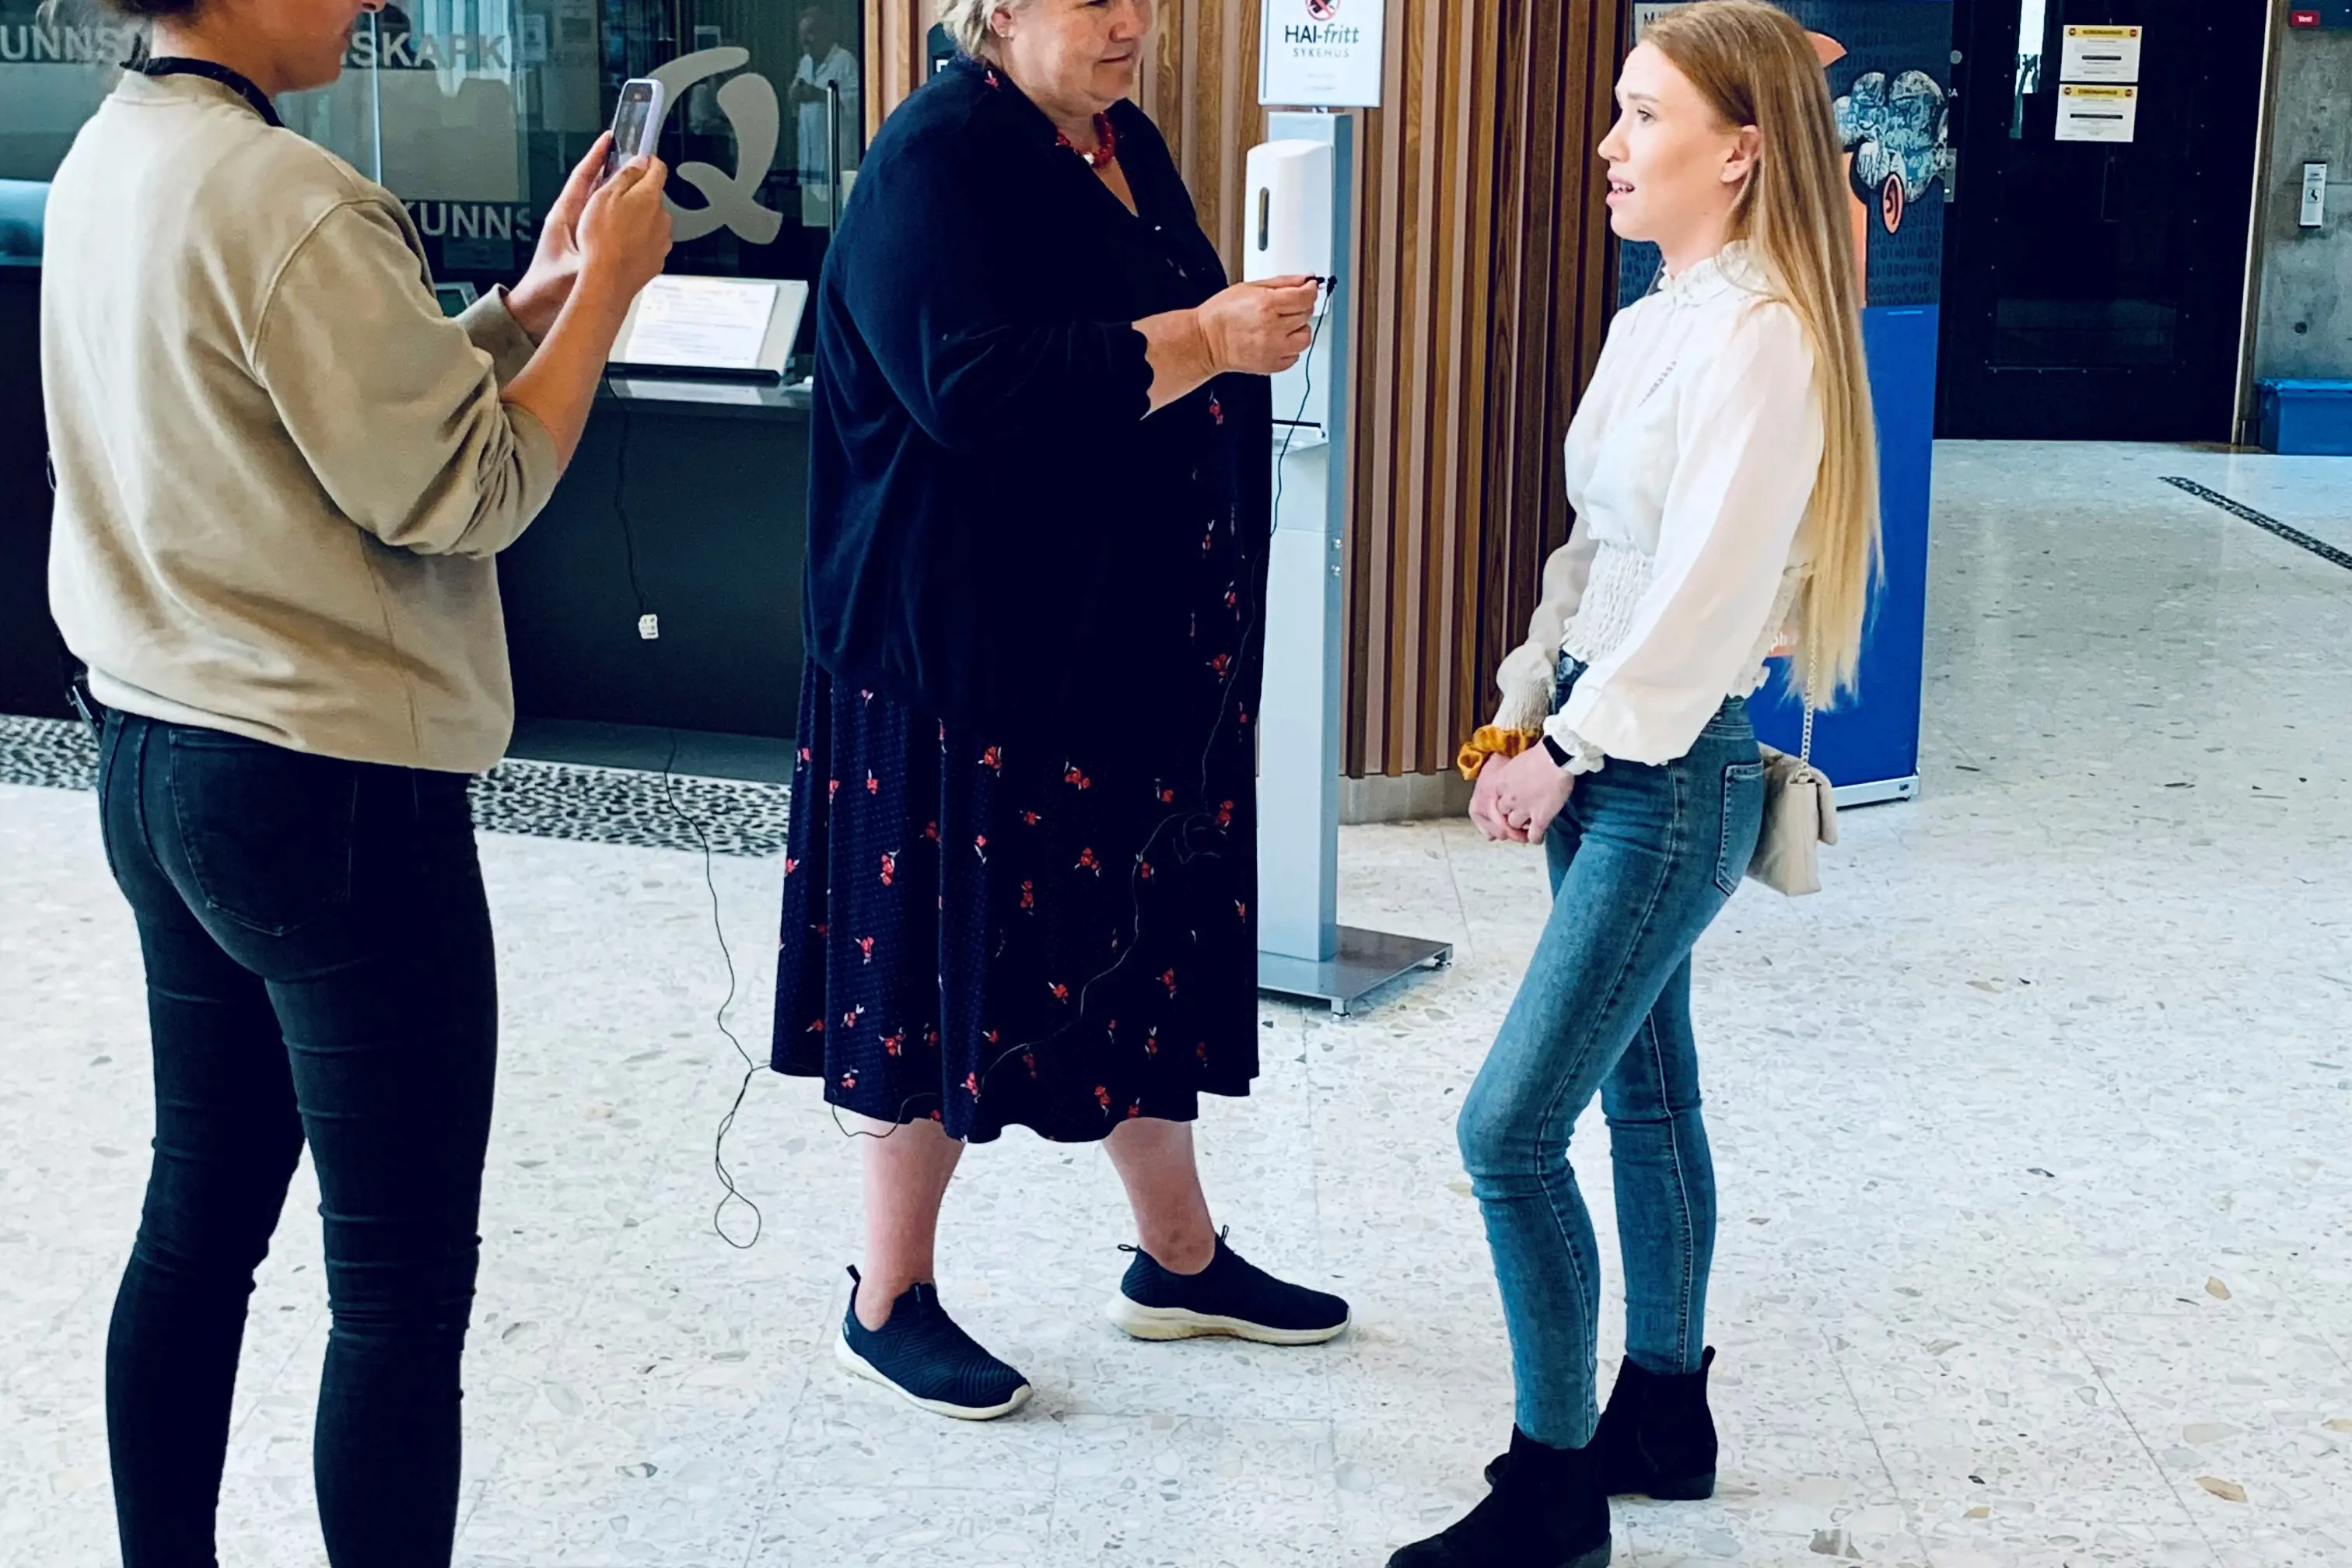 Statsminister Erna Solberg intervjuer en dame. En annen dame står ved siden av og tar bilde.